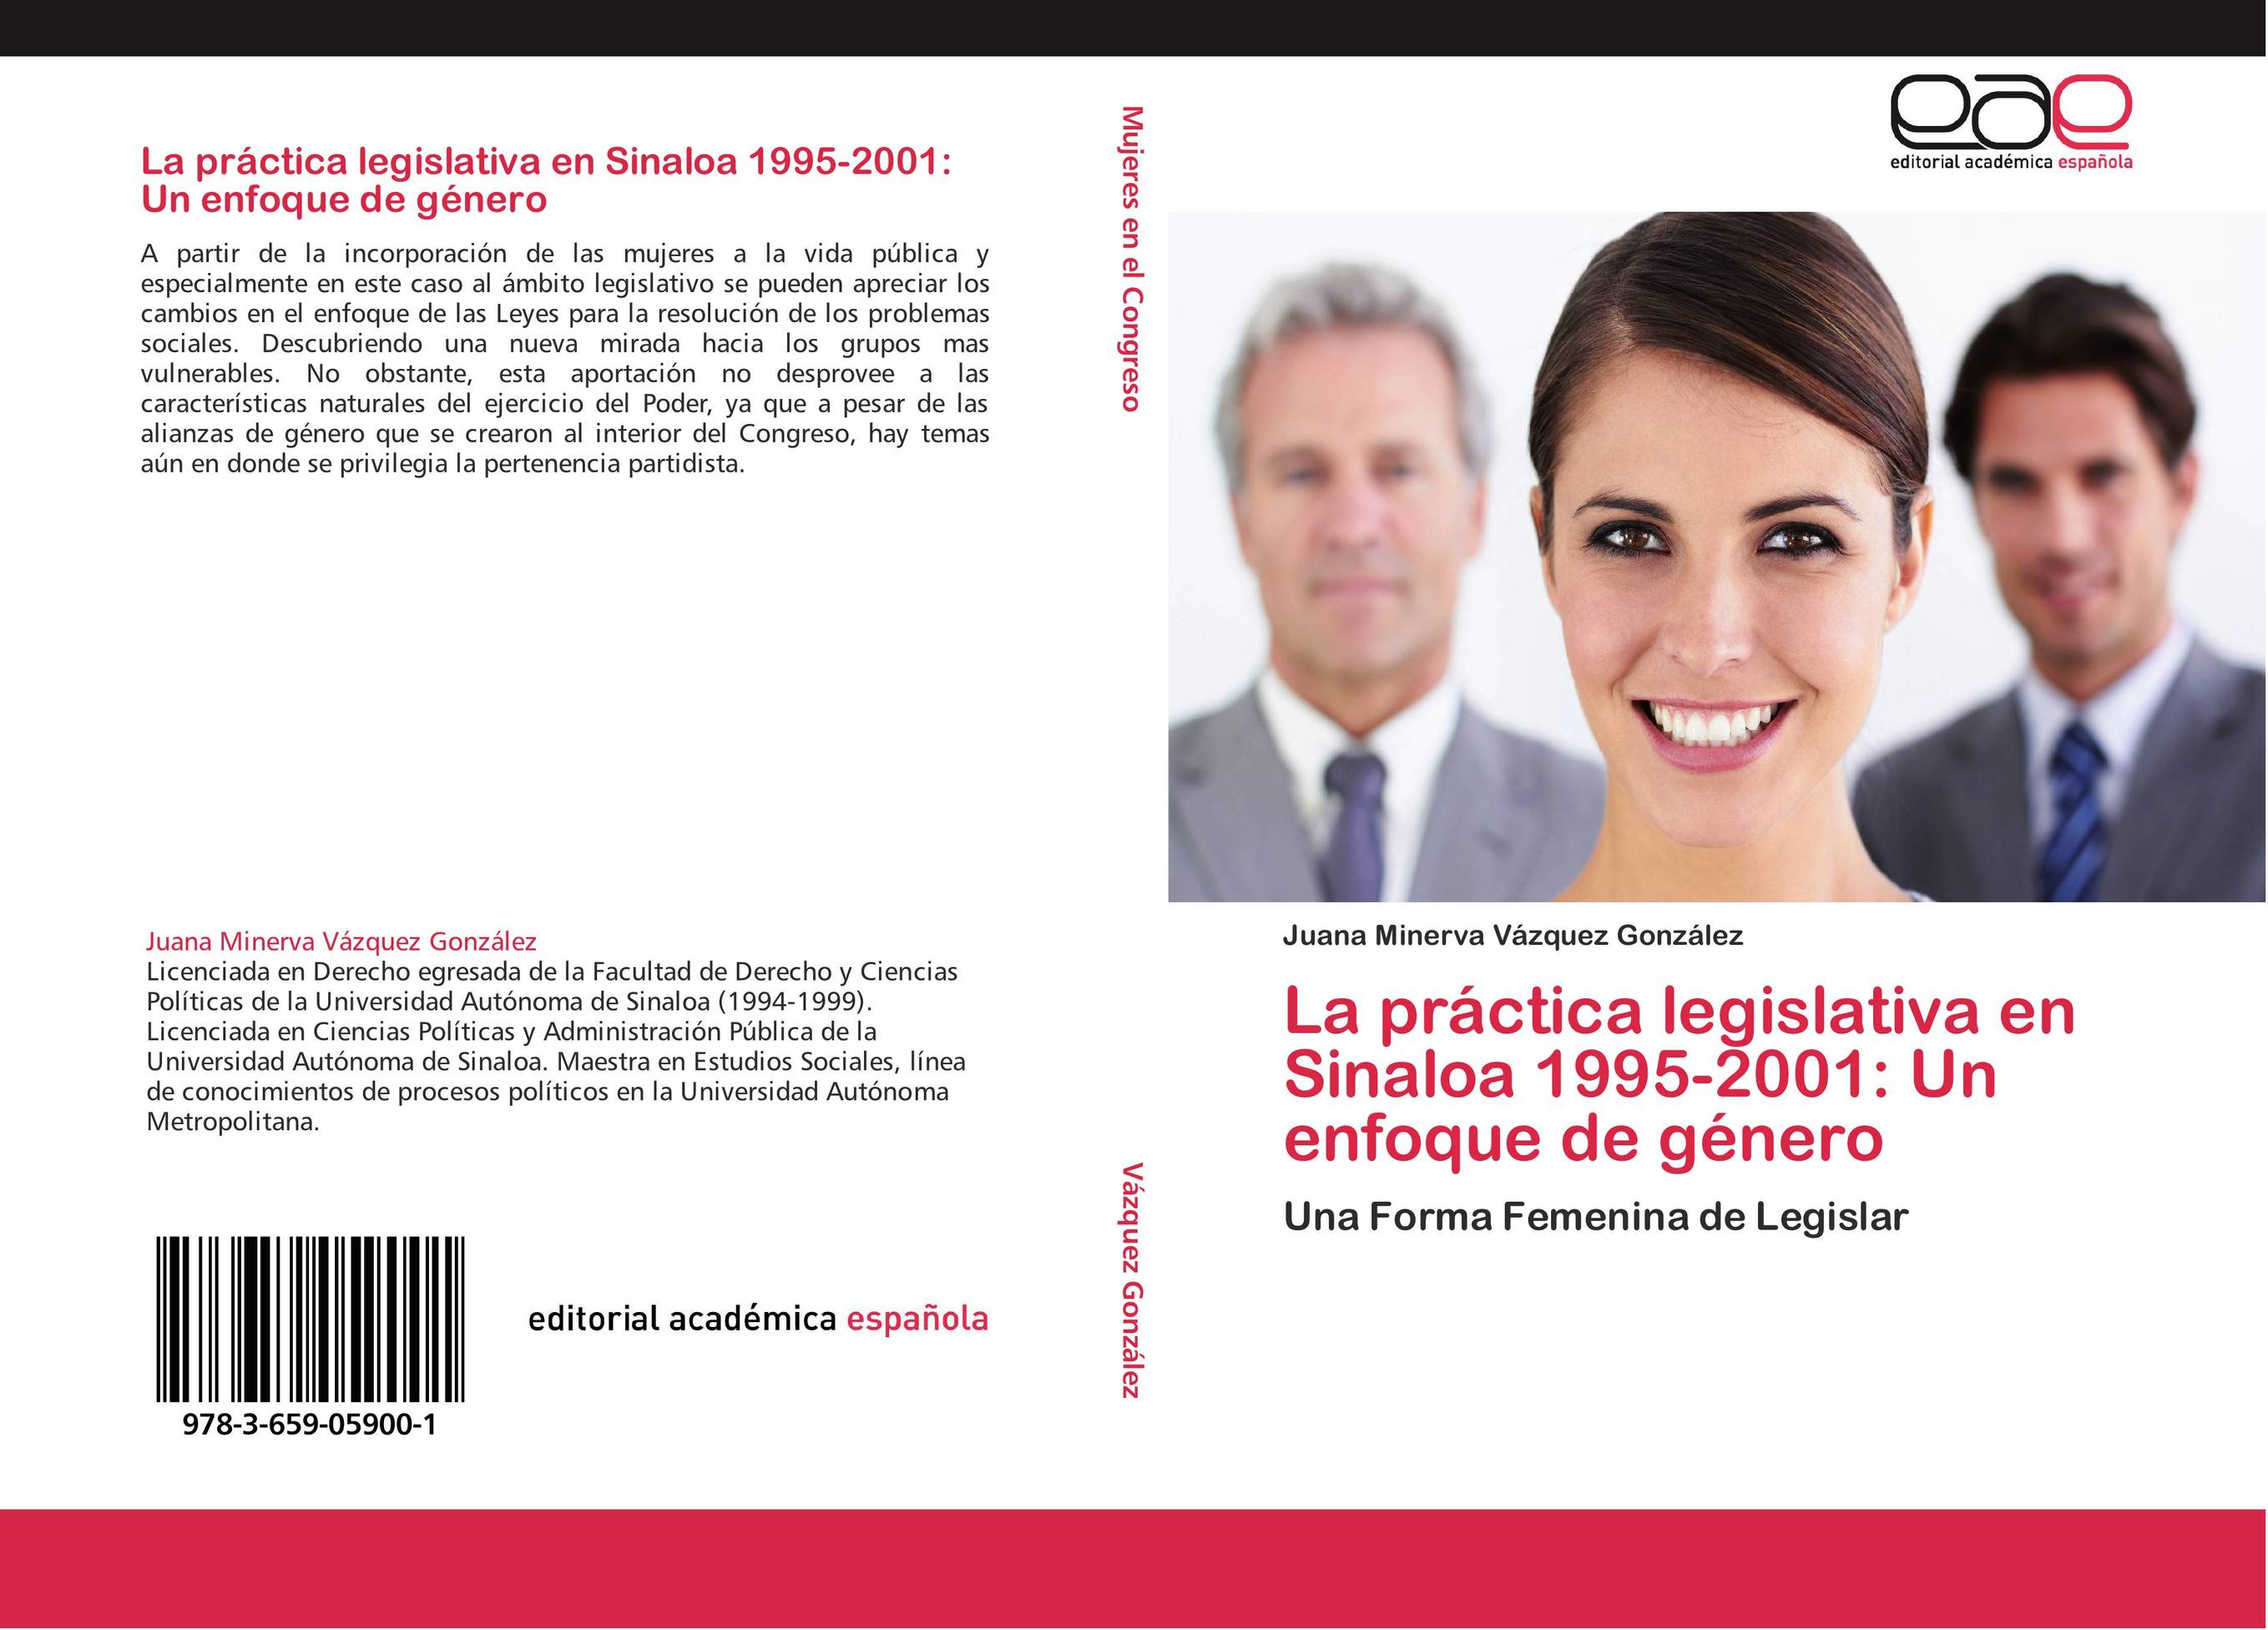 La práctica legislativa en Sinaloa 1995-2001: Un enfoque de género